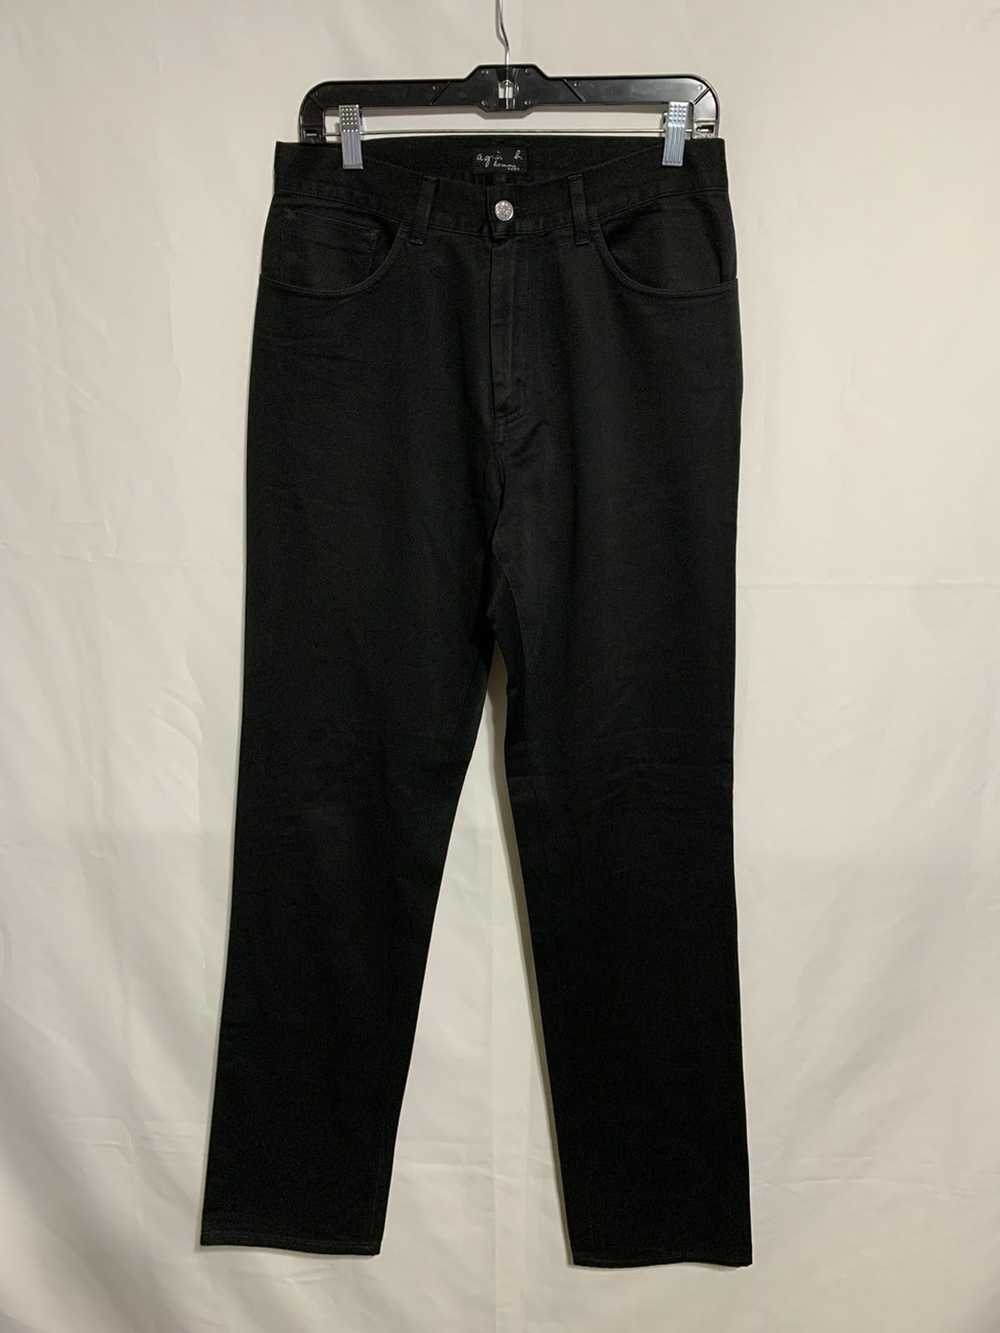 Agnes B. Black 5 pocket jeans - image 1